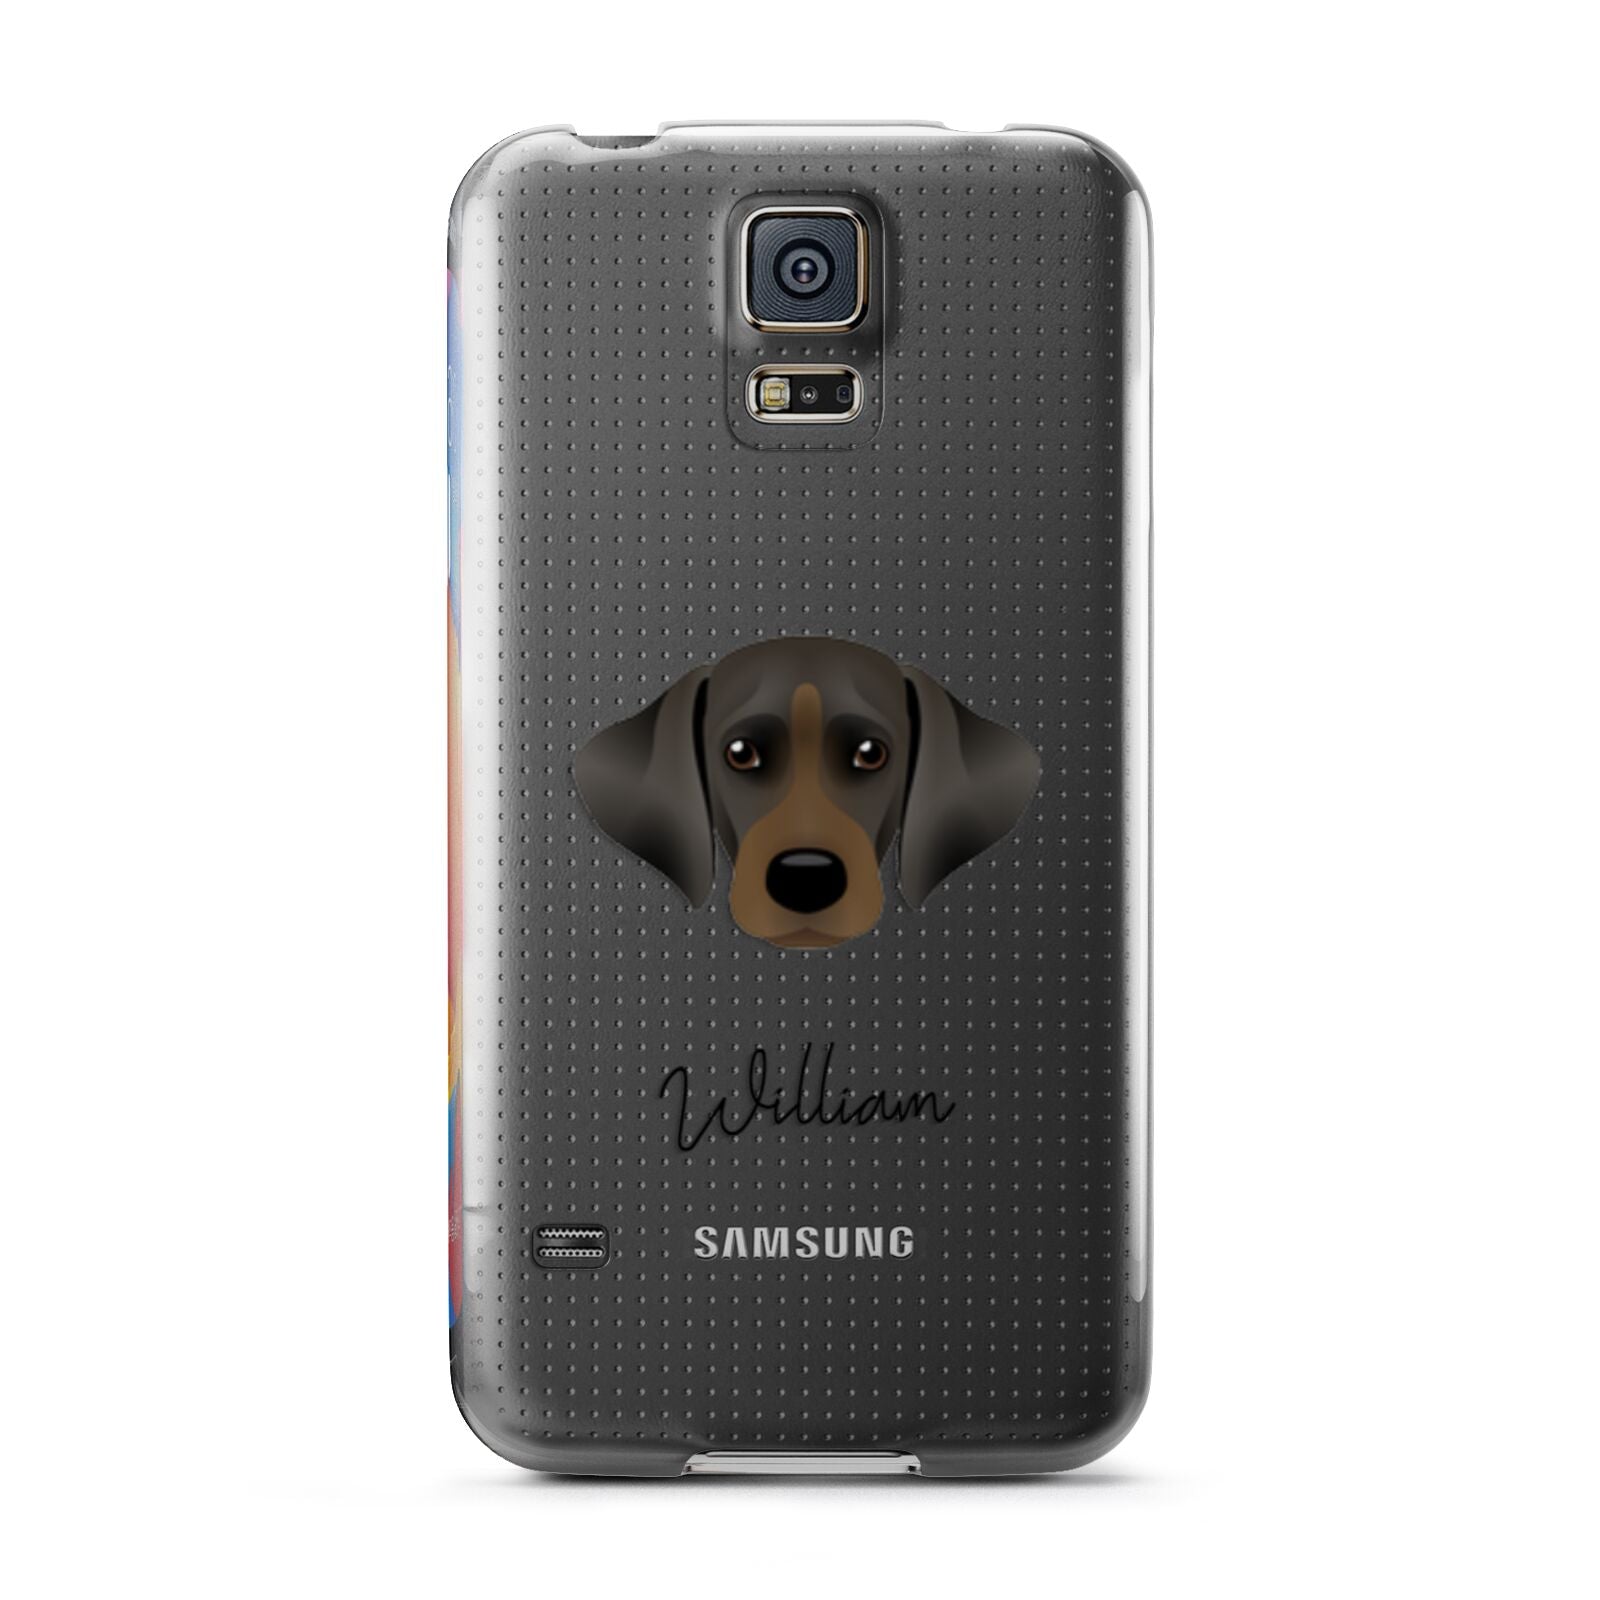 Cockador Personalised Samsung Galaxy S5 Case